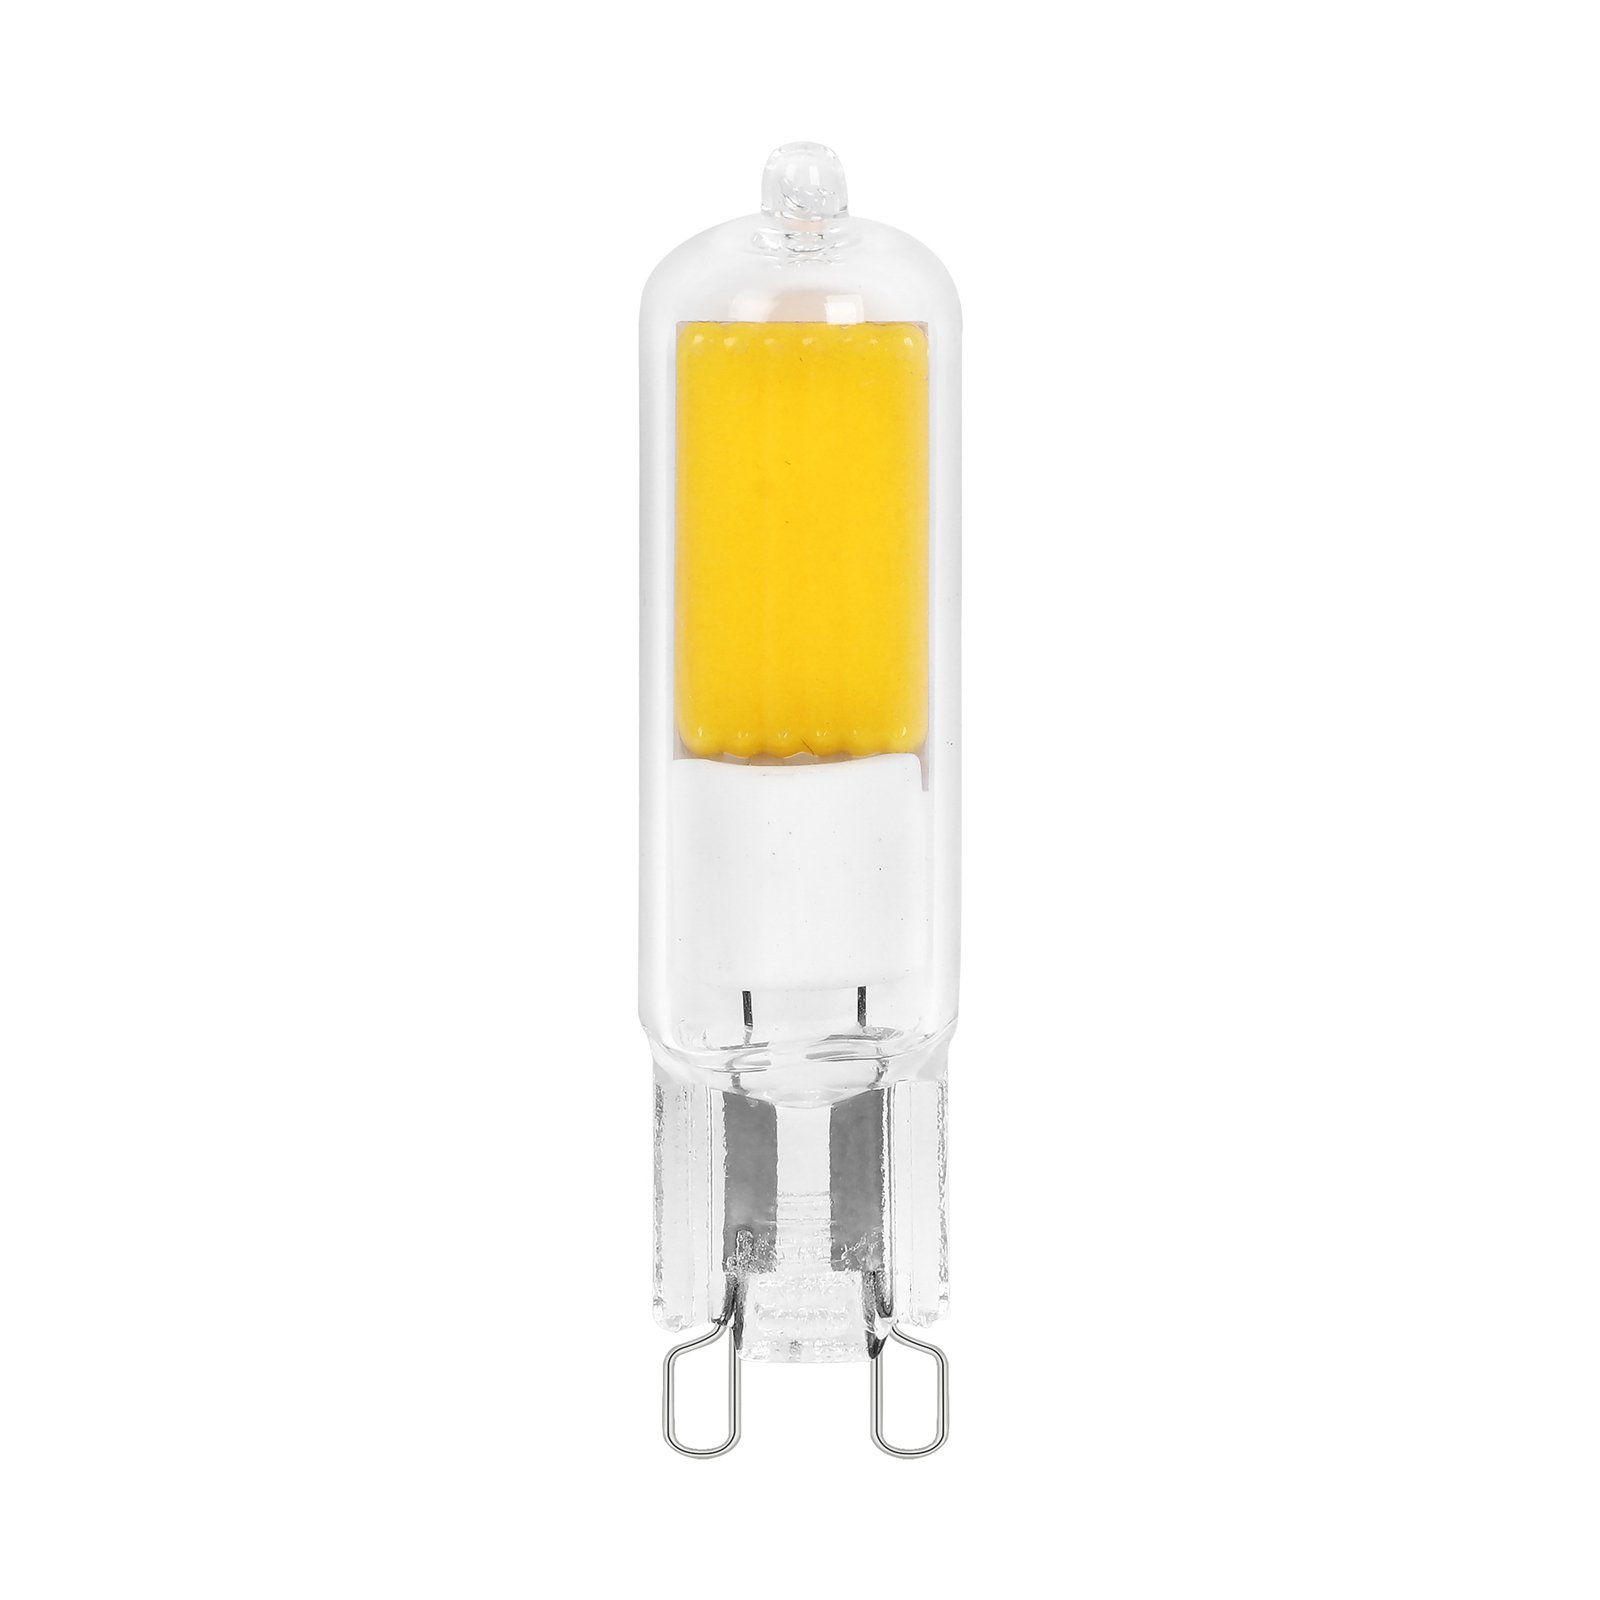 Arcchio LED-lampe med stiftsokkel, G9, 2,2W, 3000K, sett med 10 stk